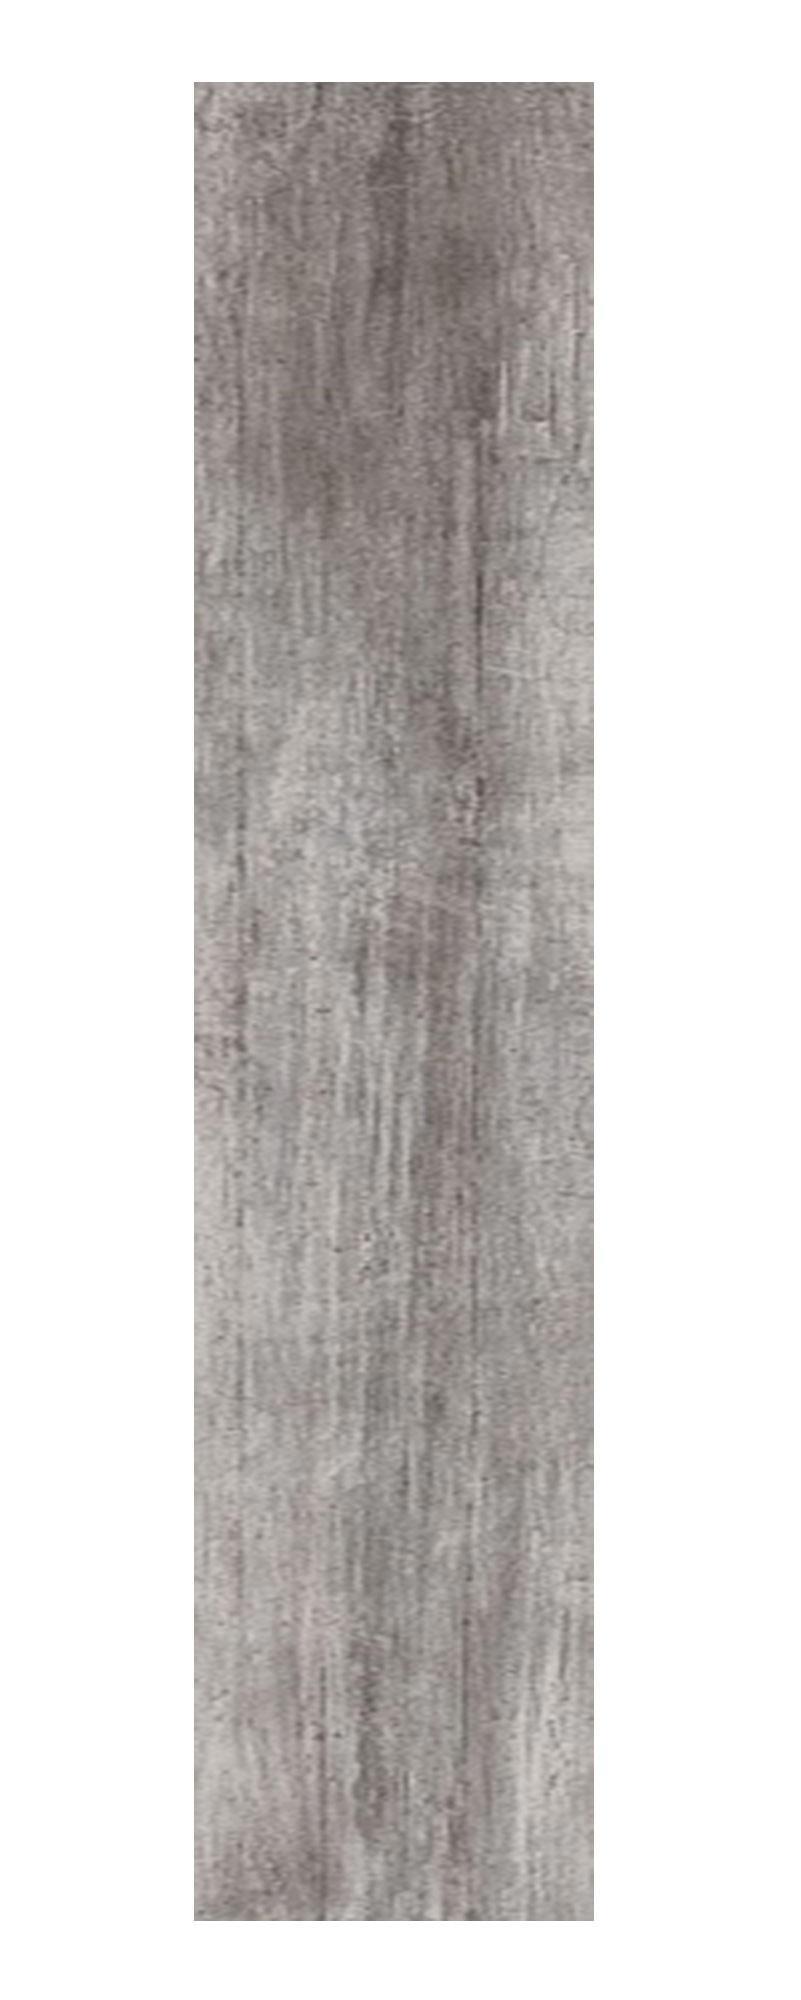 90295257 Керамический гранит Антик Вуд серый обрезной 20х160см, цена за упаковку STLM-0172759 KERAMA MARAZZI